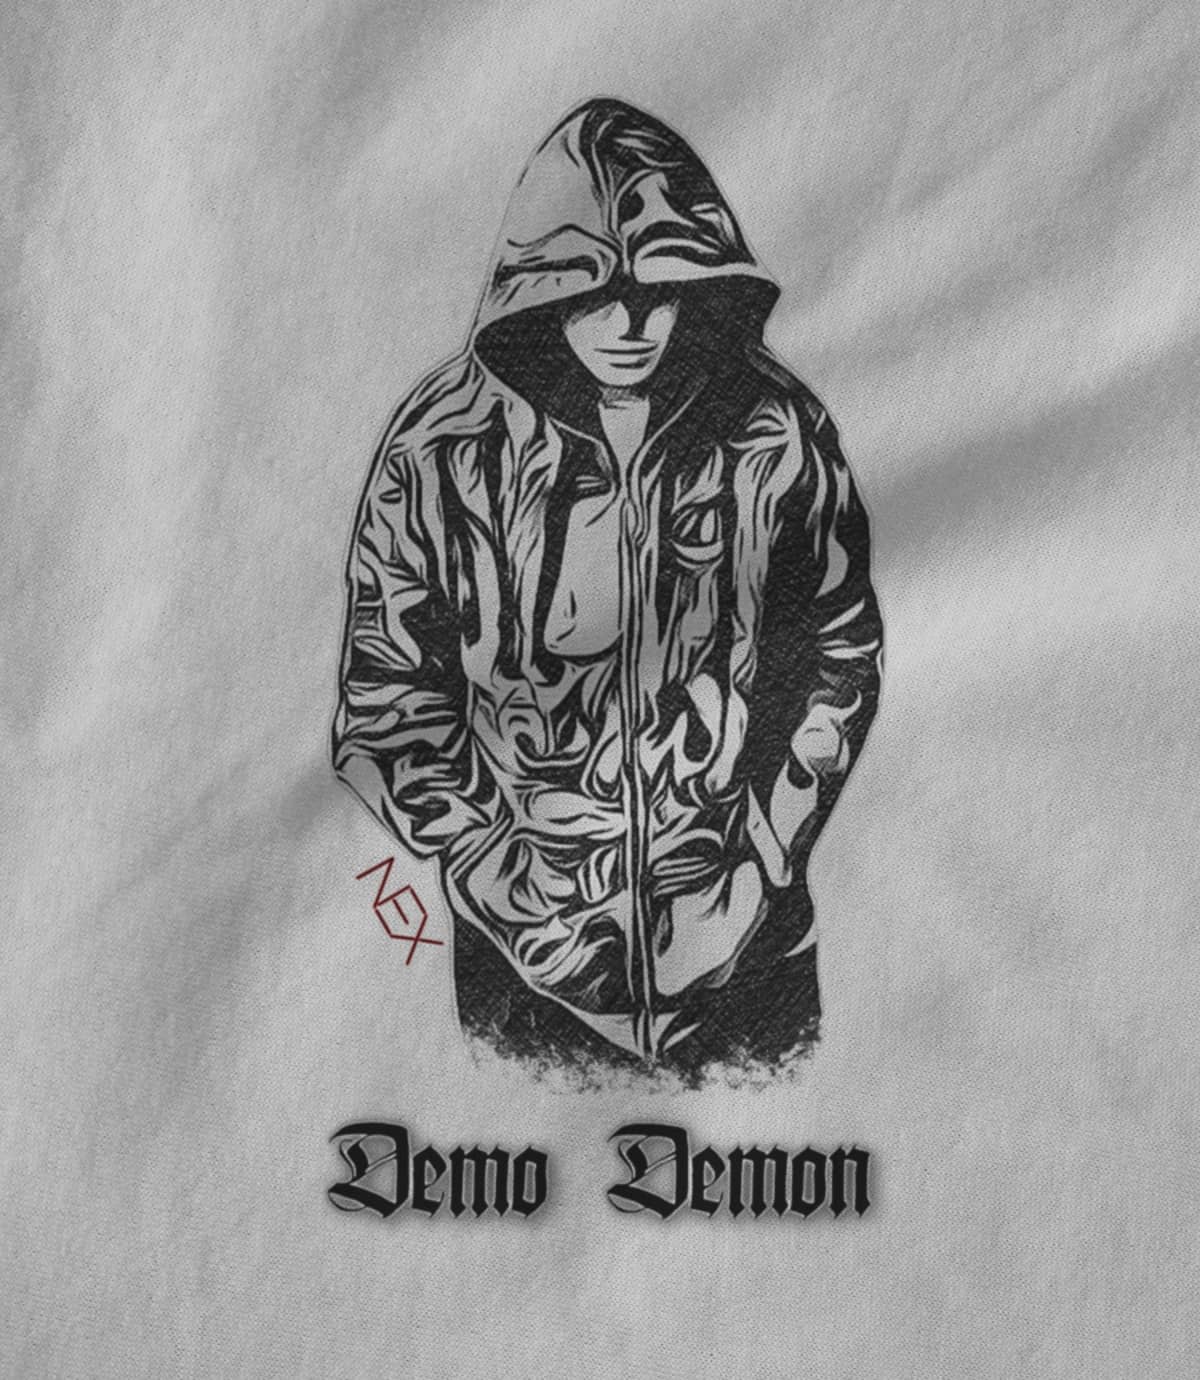 Demo Demon